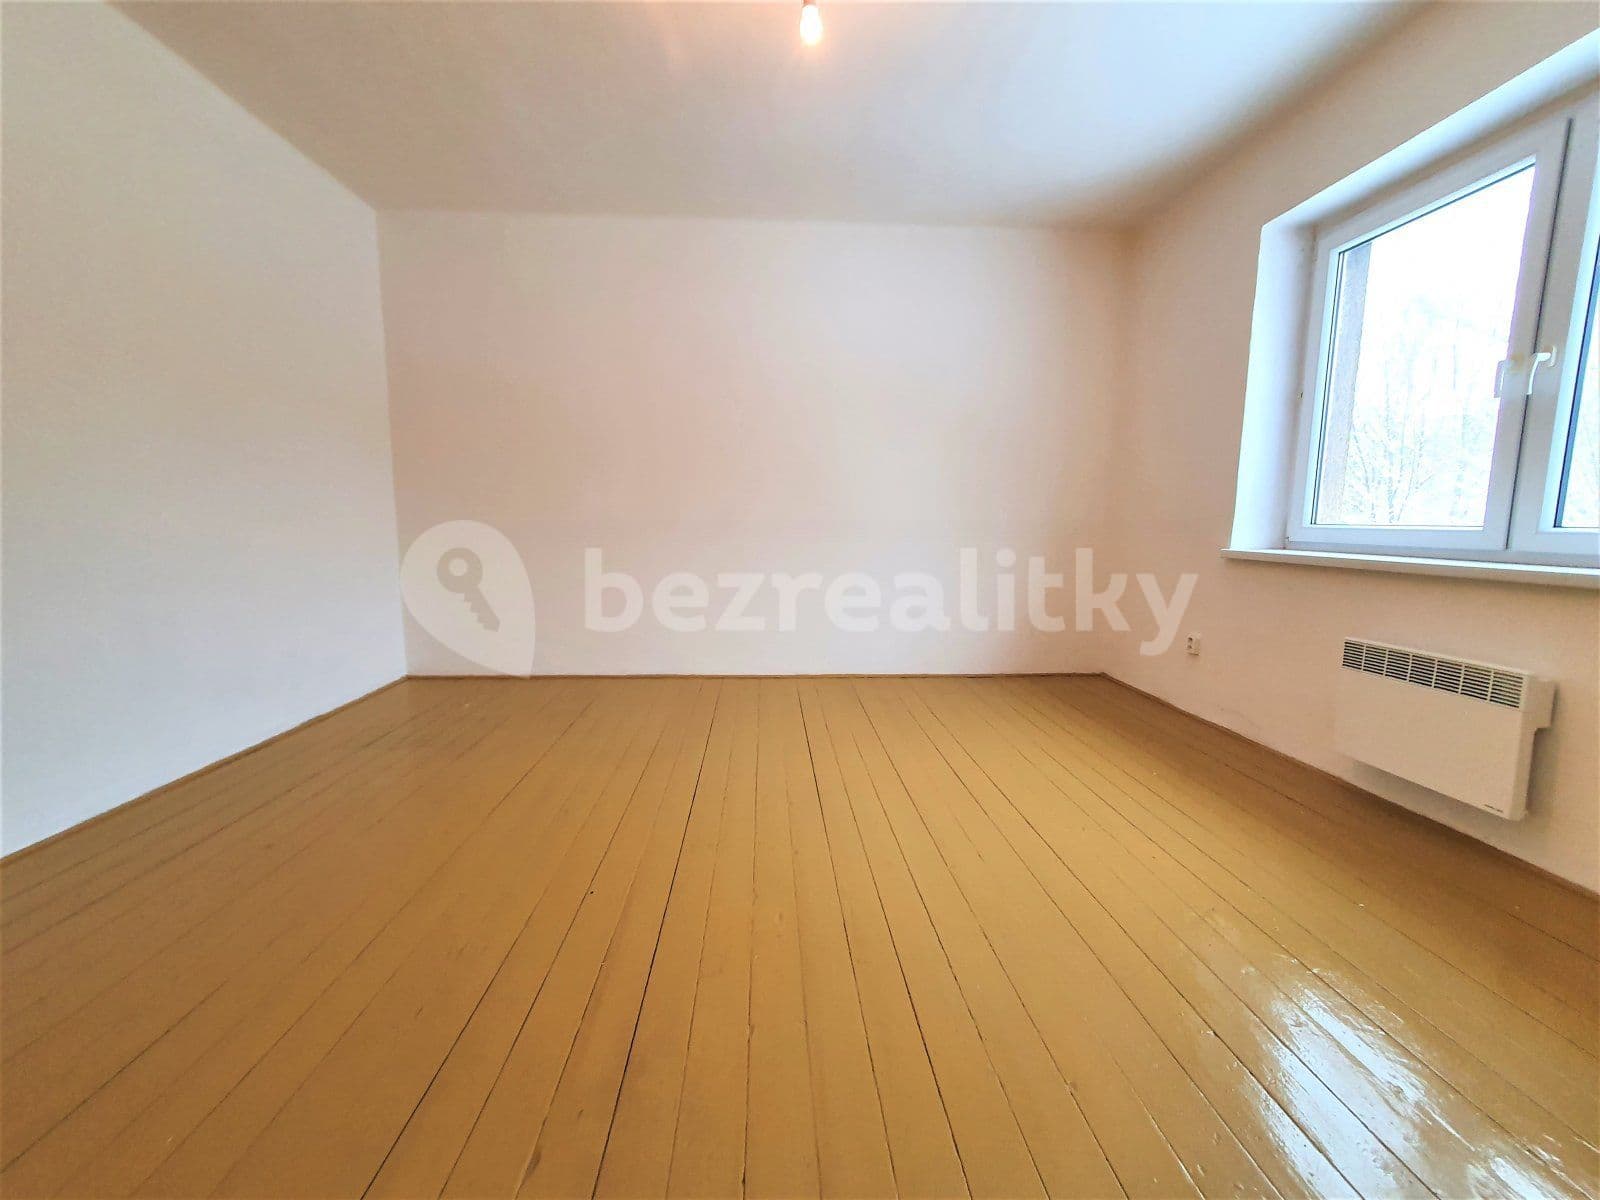 1 bedroom flat to rent, 46 m², Porubská, Petřvald, Moravskoslezský Region